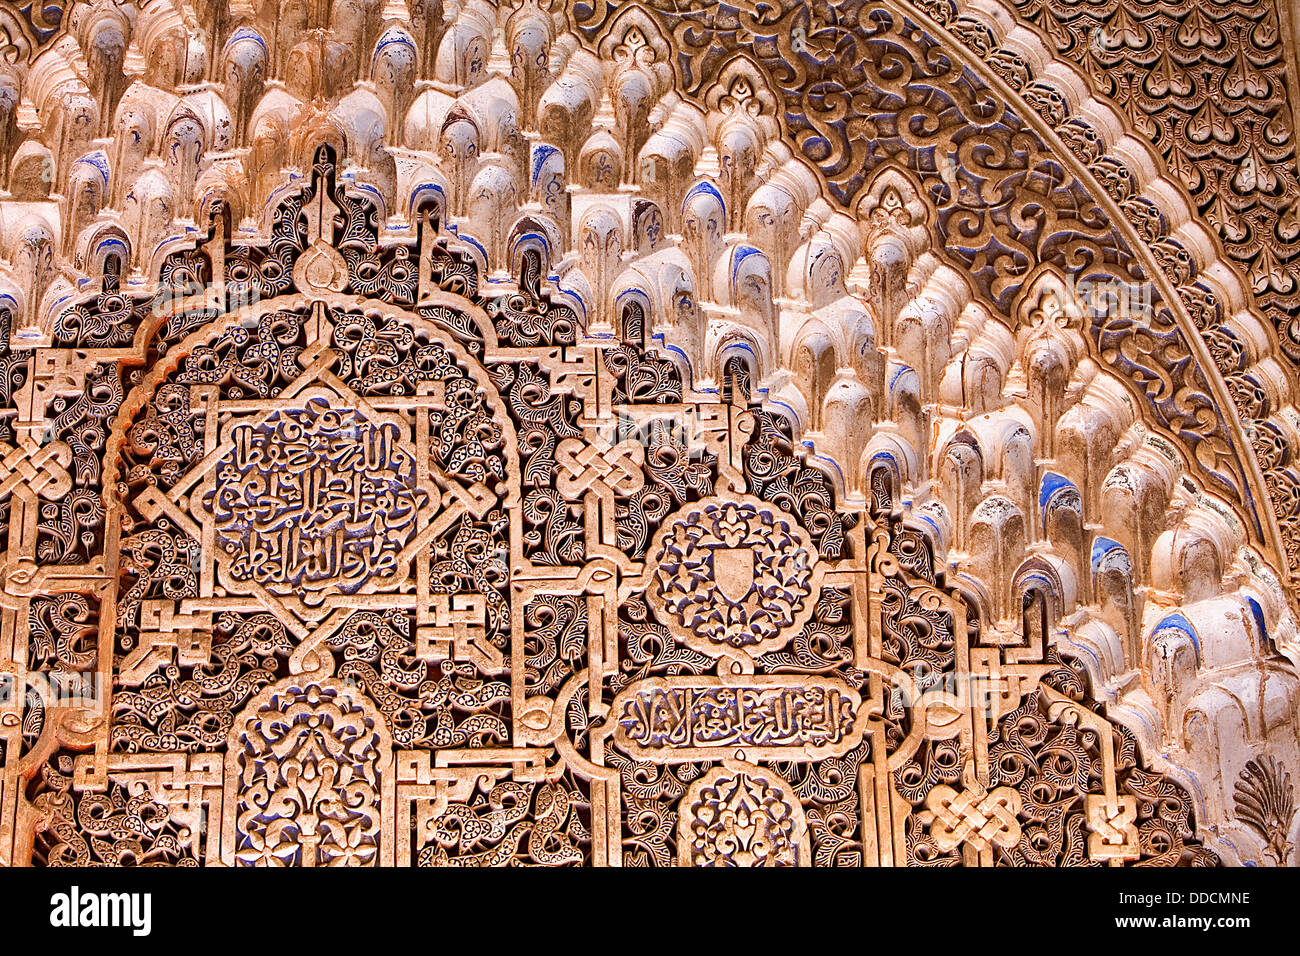 Detalle de la decoración en el mirador de Daraxa, en Aljimeces hall, el Palacio de Los Leones,palacios Nazaries, Alhambra, Granada, Andalucía, España Foto de stock